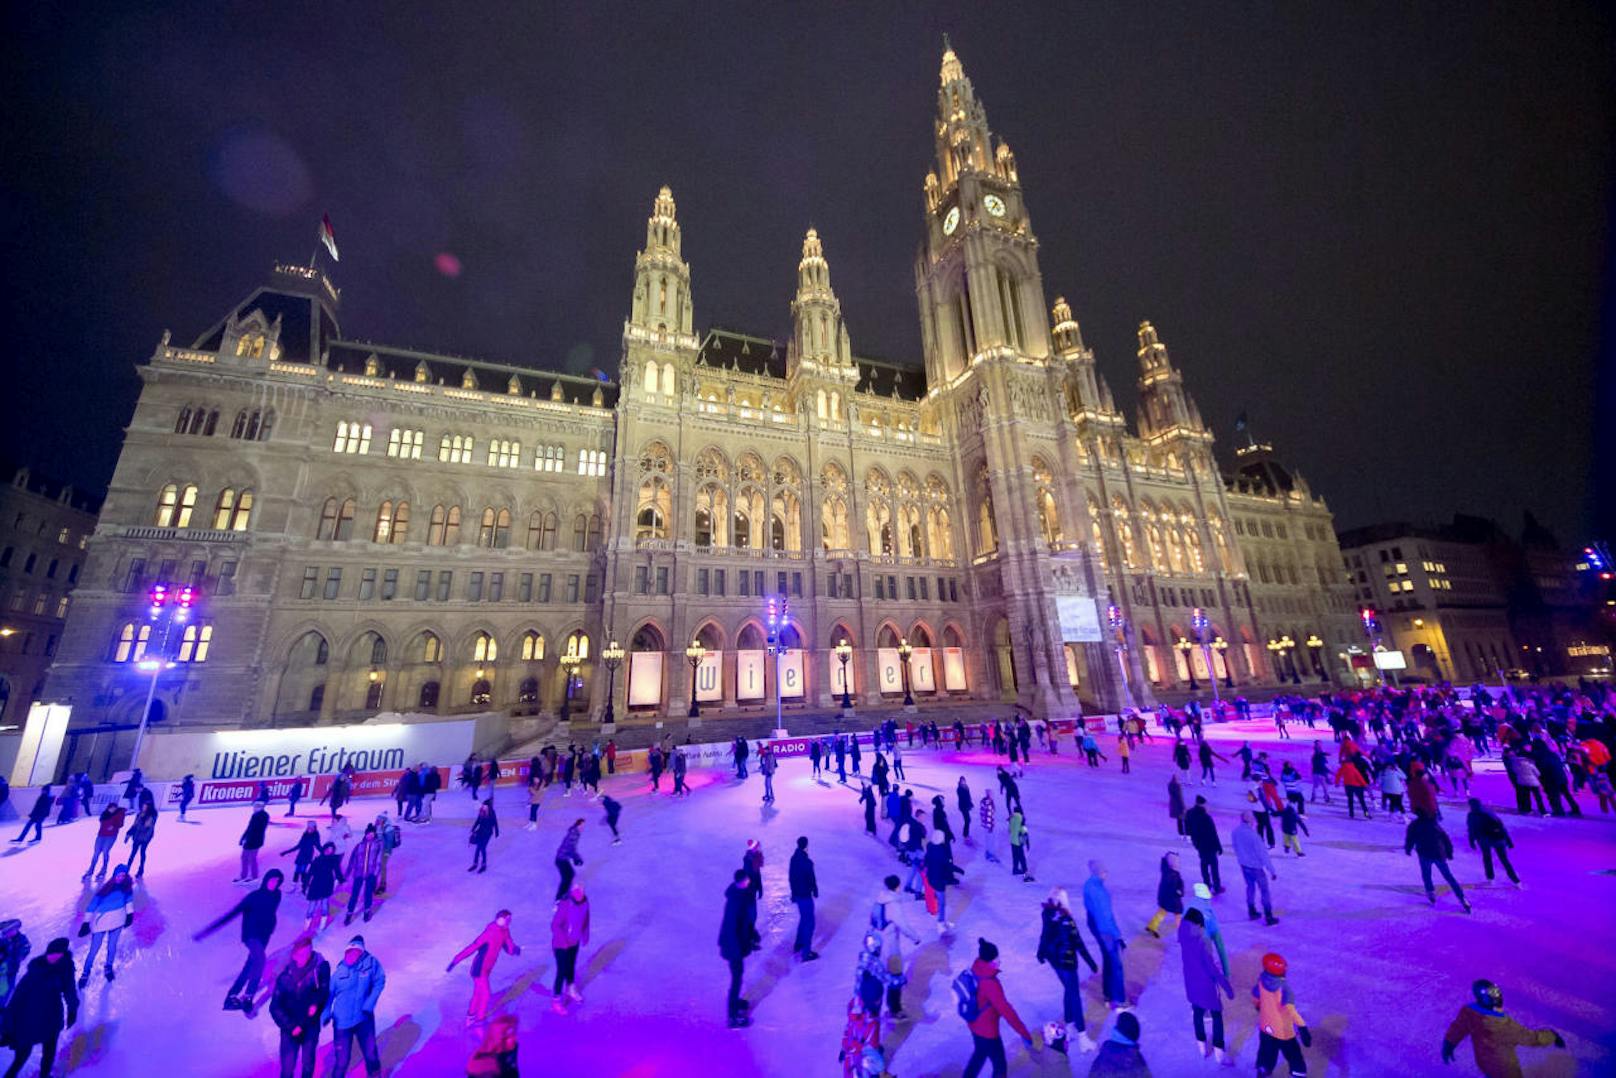 Von 20. Jänner bis inklusive 4. März 2018 von 10 bis 22 Uhr hat der Wiener Eistraum am Rathausplatz wieder geöffnet. Am 19. Jänner ab 17 Uhr gibts zur Eröffnung Gratis-Eislaufen.
Hier sehen Sie Impressionen der vergangenen Jahre.